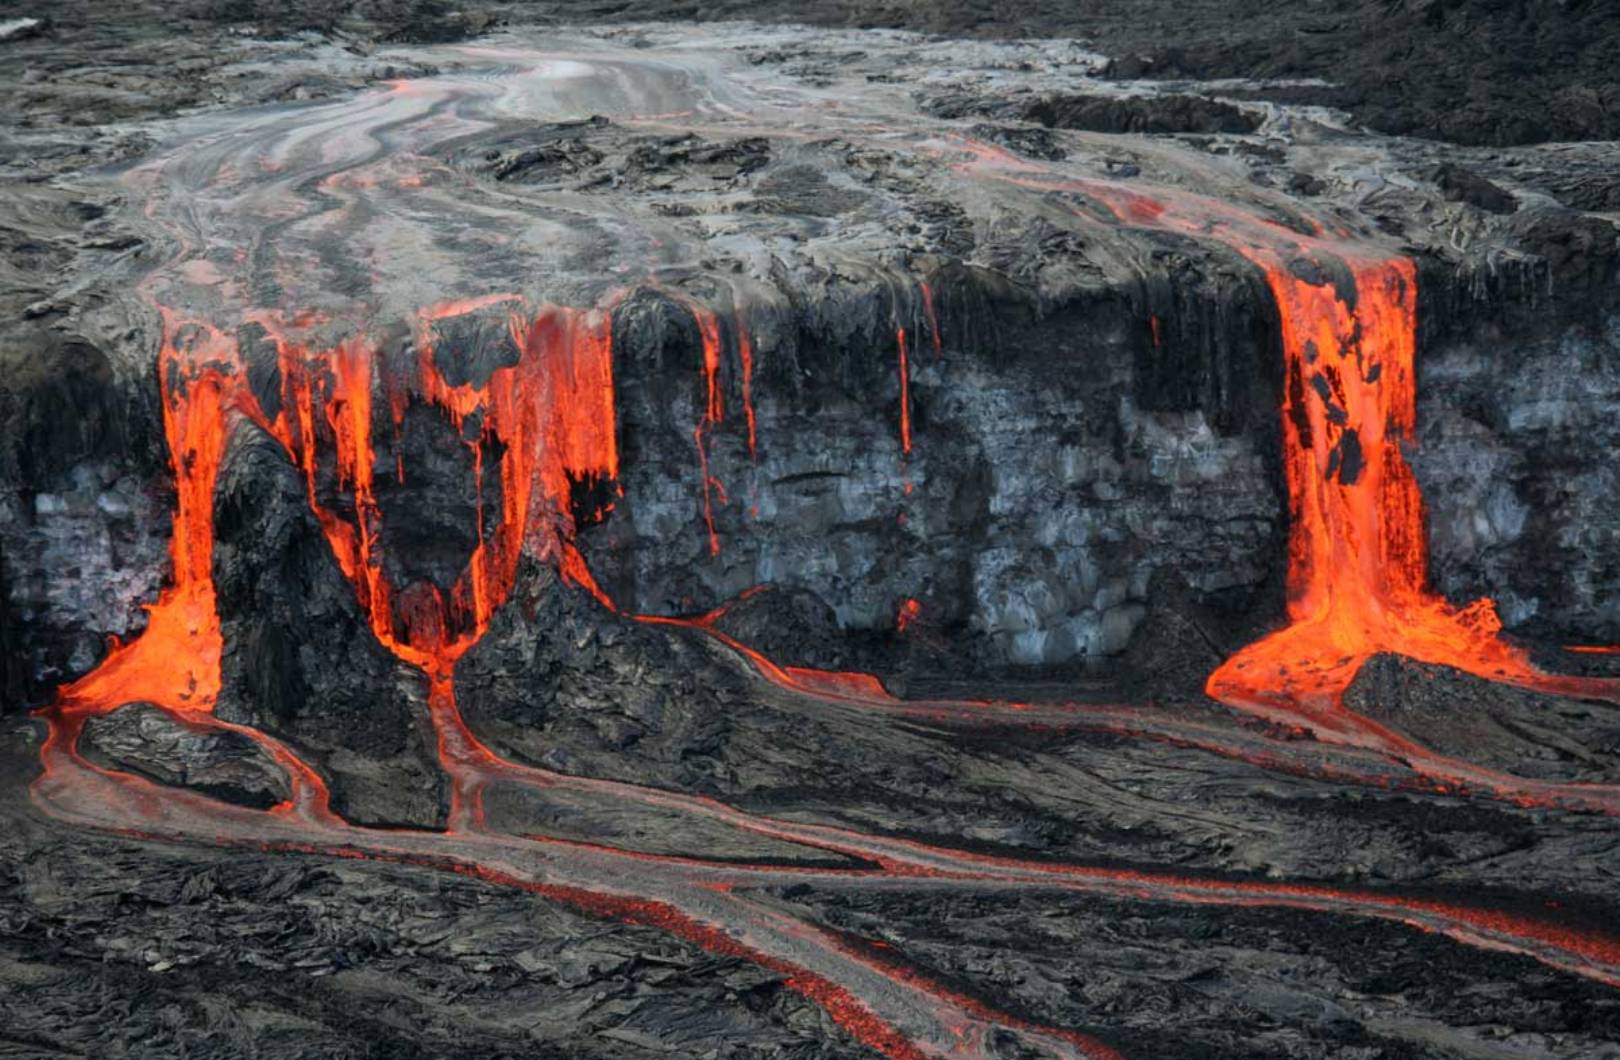 ¯Une éruption du volcan Kilauea à Hawaï a émis de grandes quantités de laves formant la cascade que l'on voit sur cette photo. © USGS